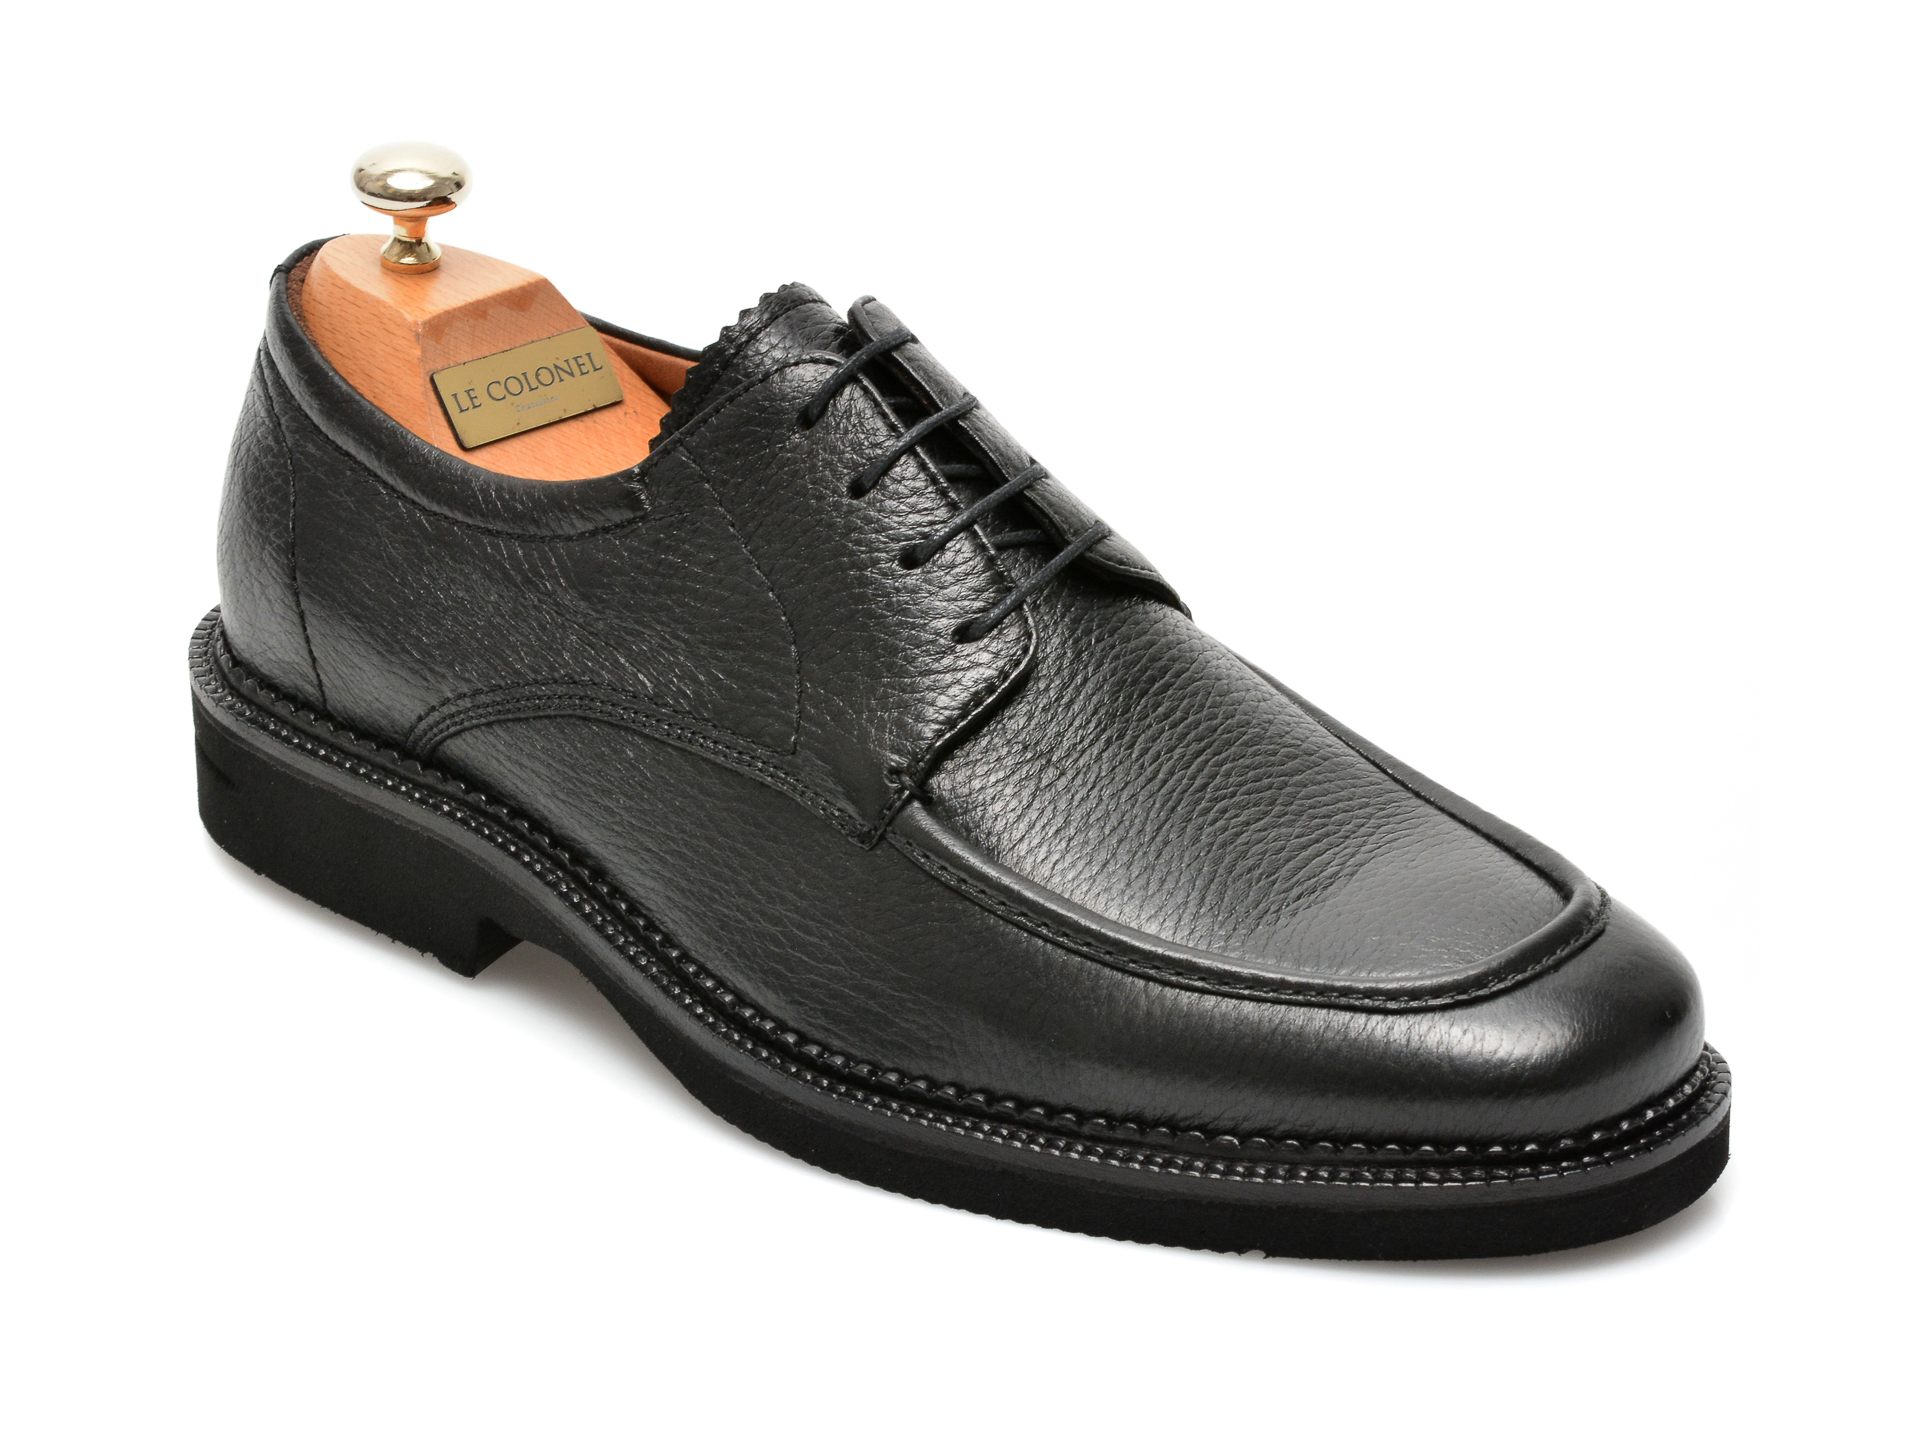 Pantofi LE COLONEL negri, 63501, din piele naturala Le Colonel